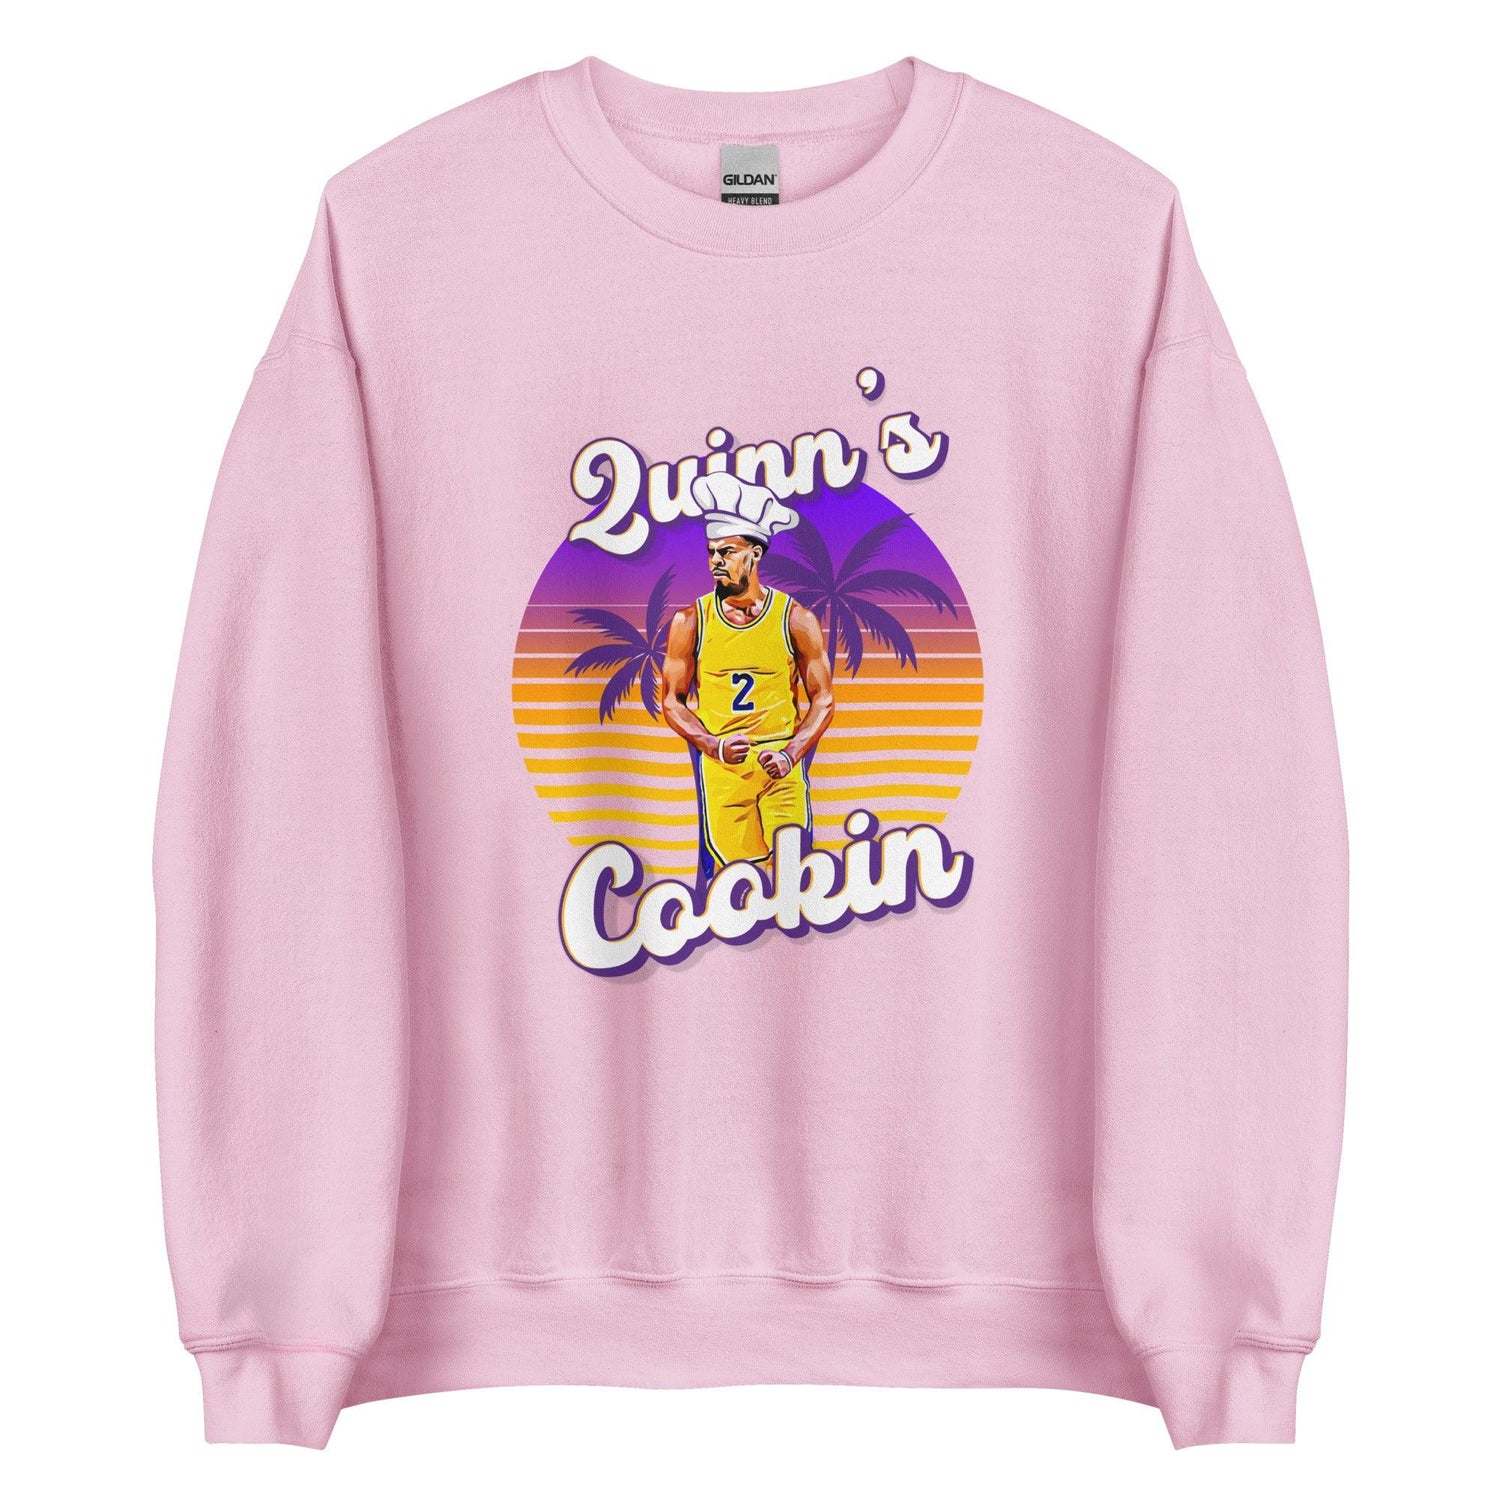 Quinn Cook "Quinns Cookin" Sweatshirt - Fan Arch